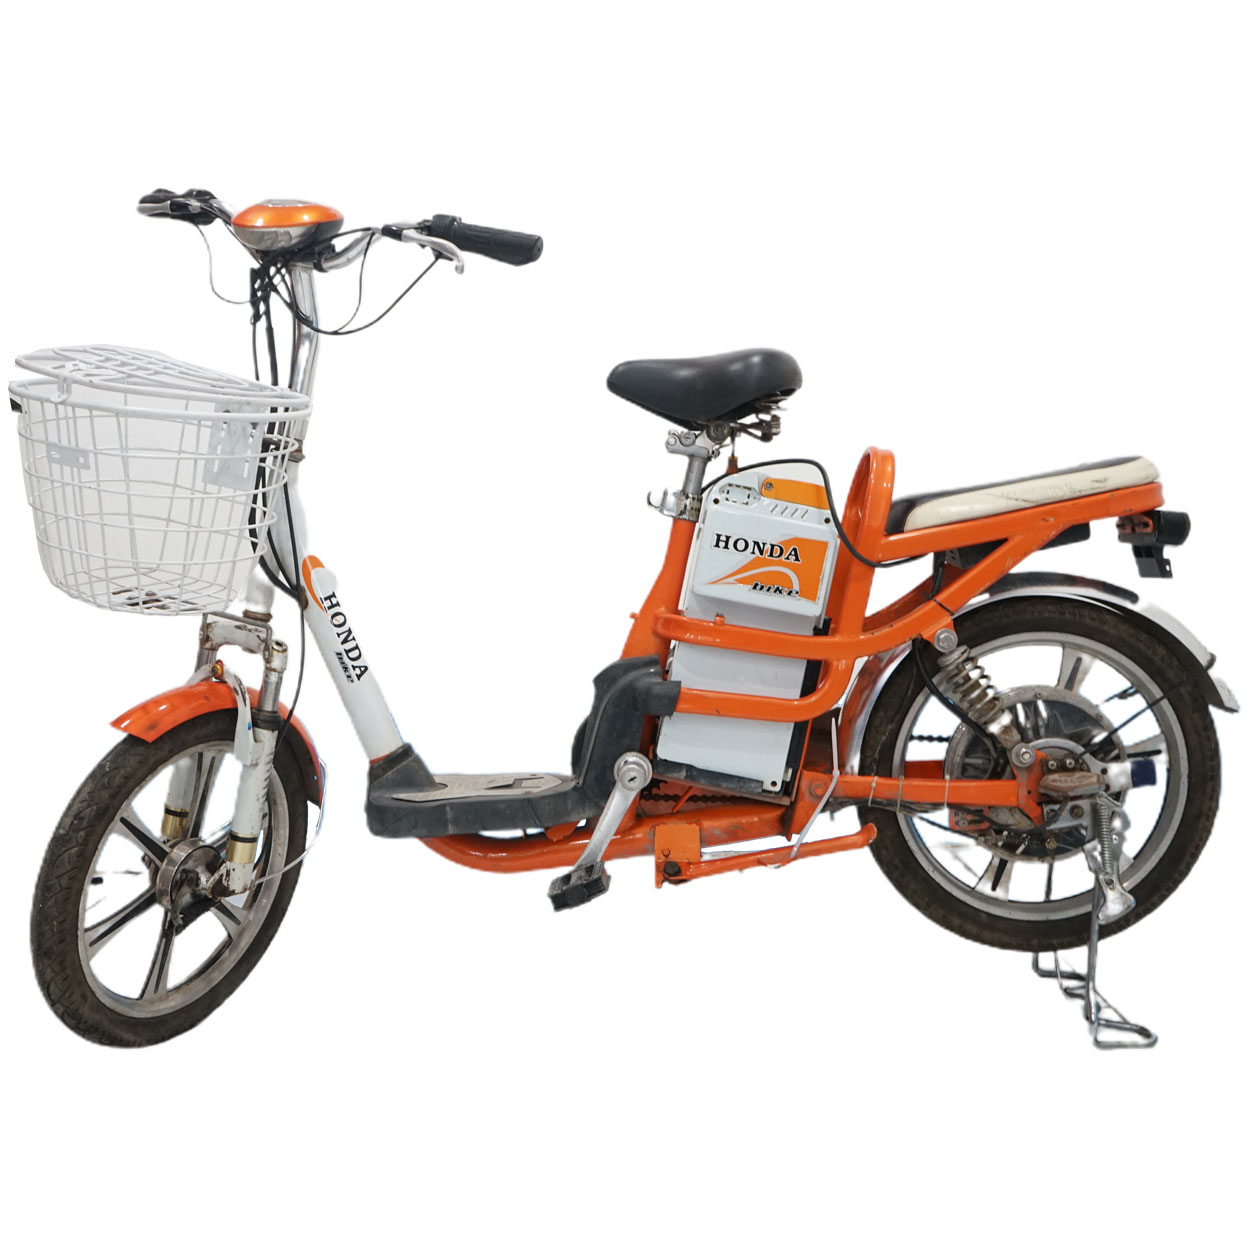 Xe đạp điện Honda màu cam cũ giá rẻ 15